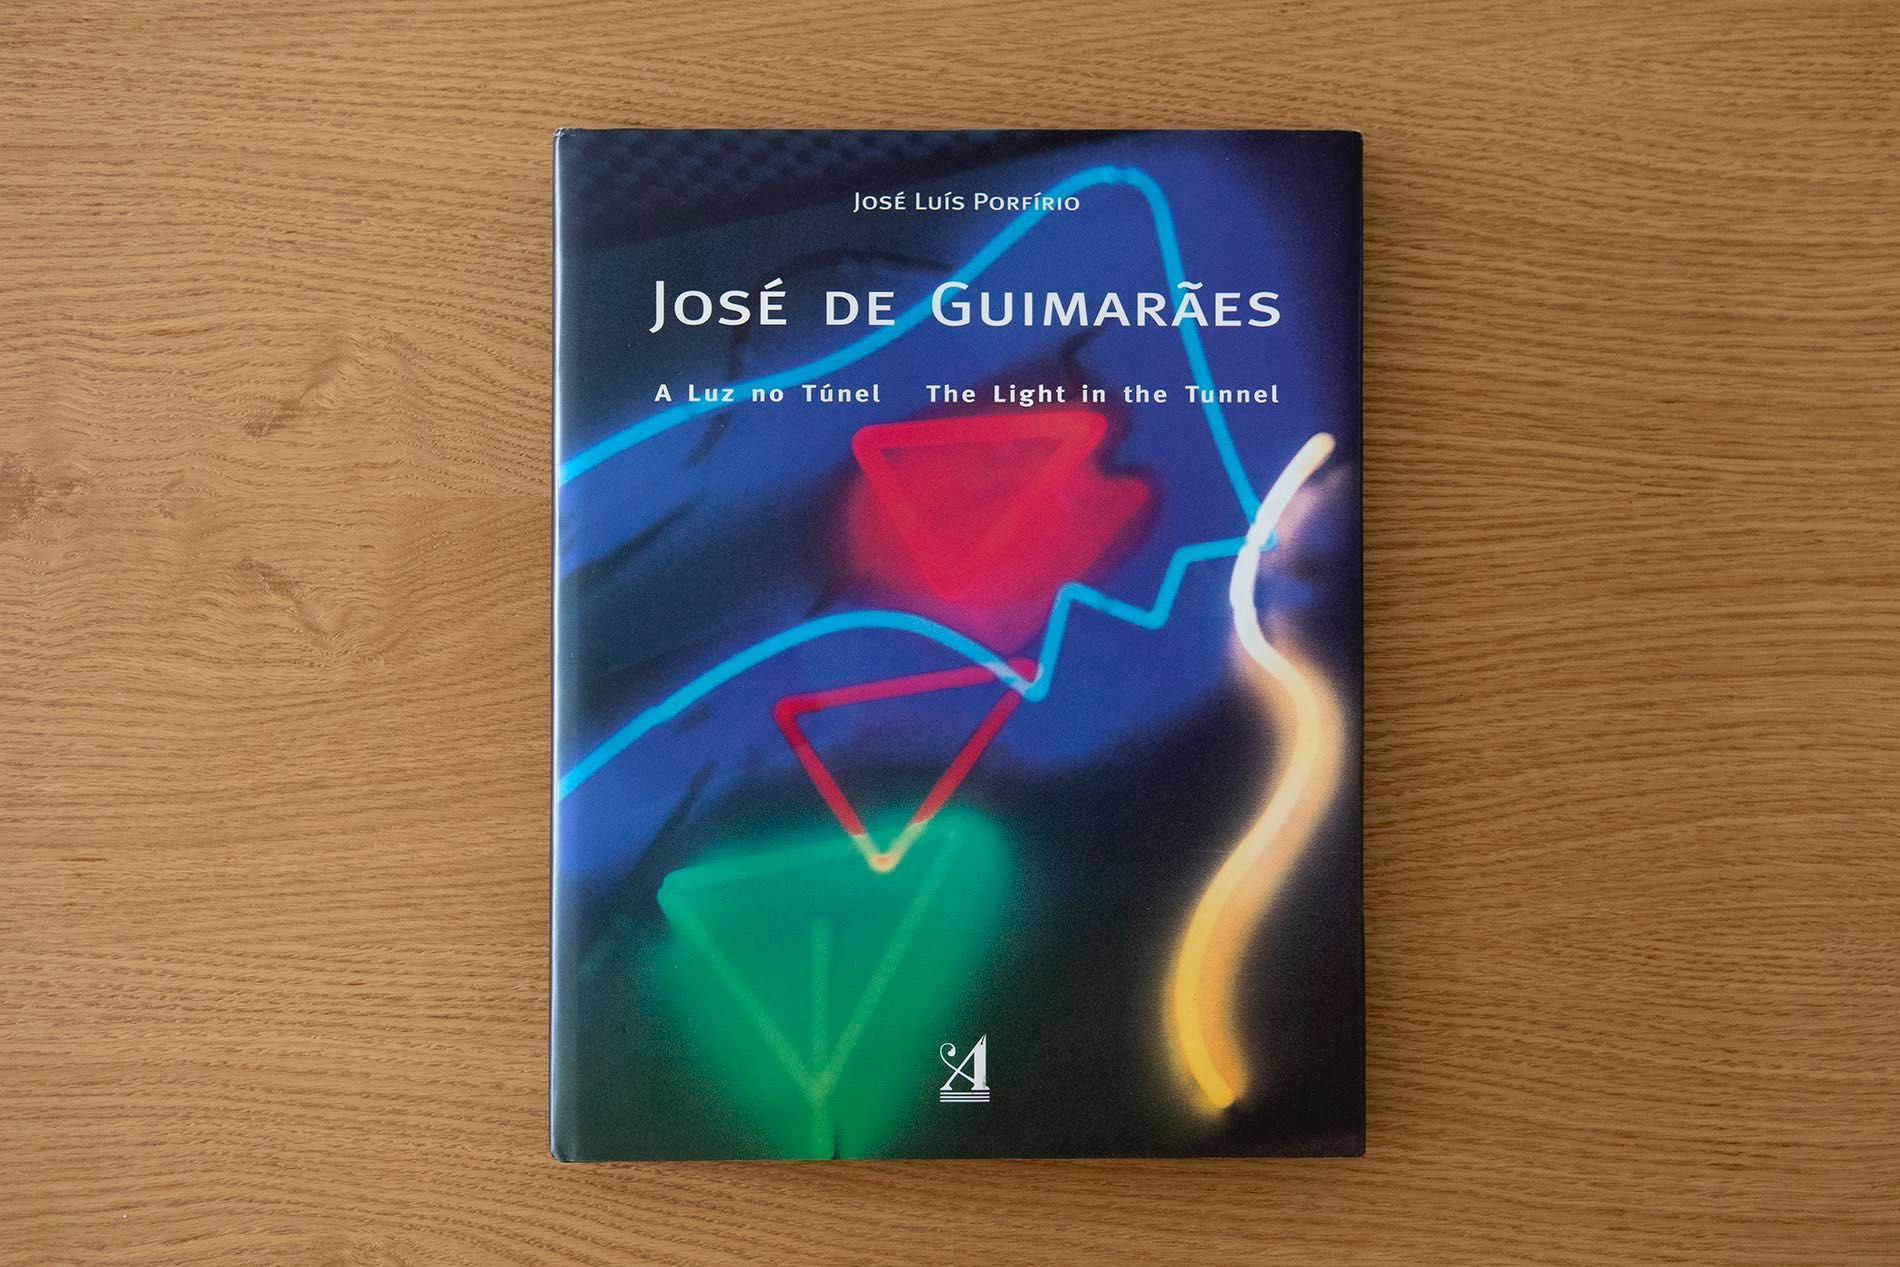 Livro "A luz no Túnel" - José de Guimarães